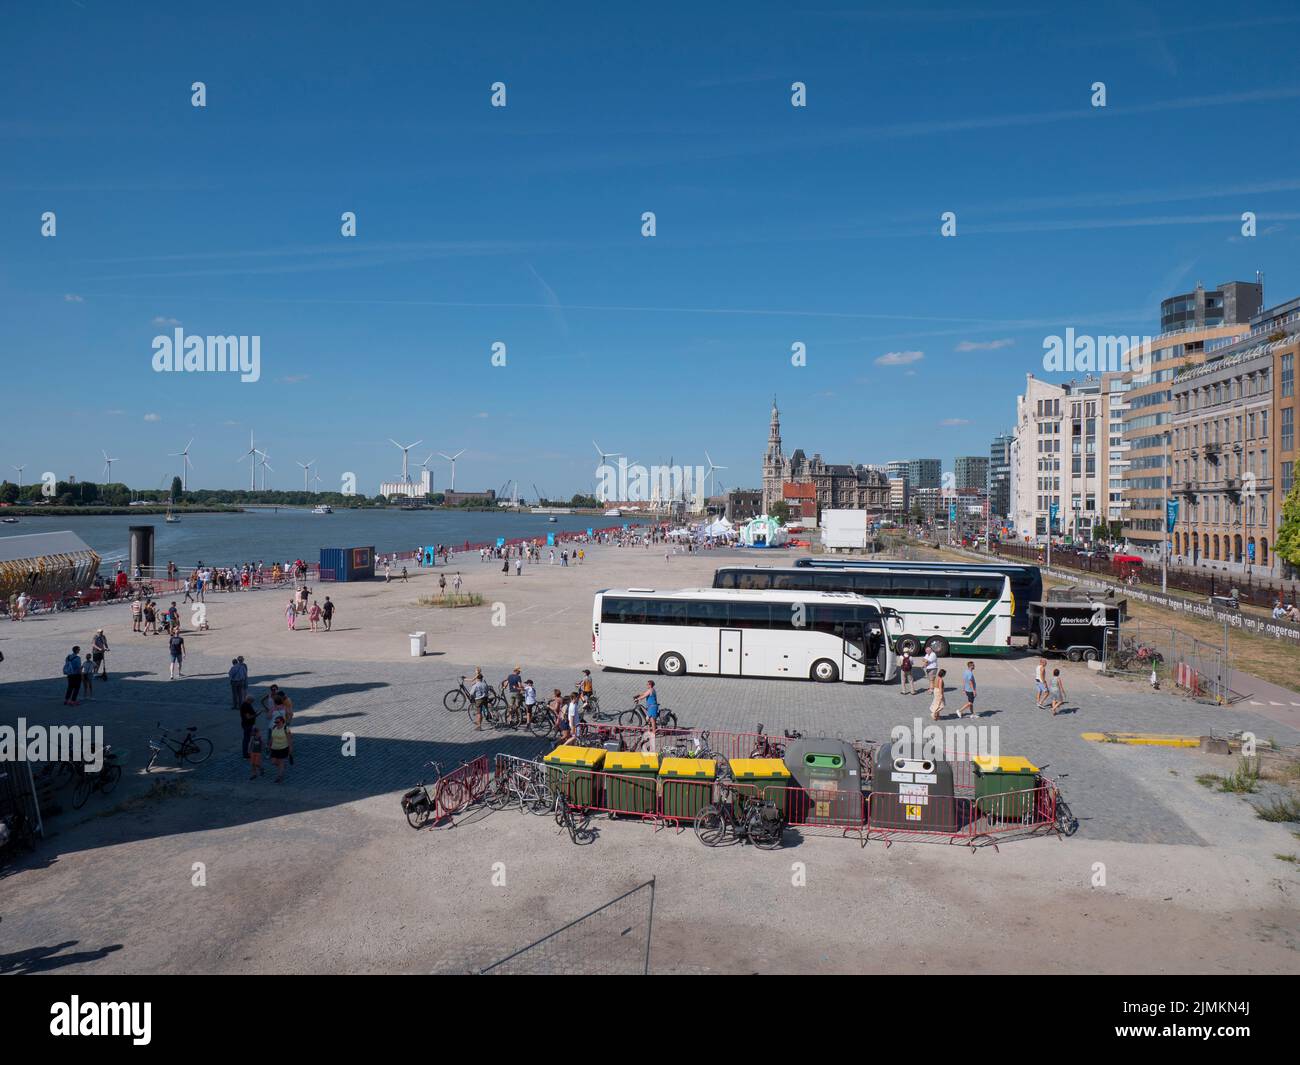 Anvers, Belgique, 24 juillet 2022, paysage urbain avec de nombreux touristes sur les quais de l'Escaut à Anvers Belgique Banque D'Images